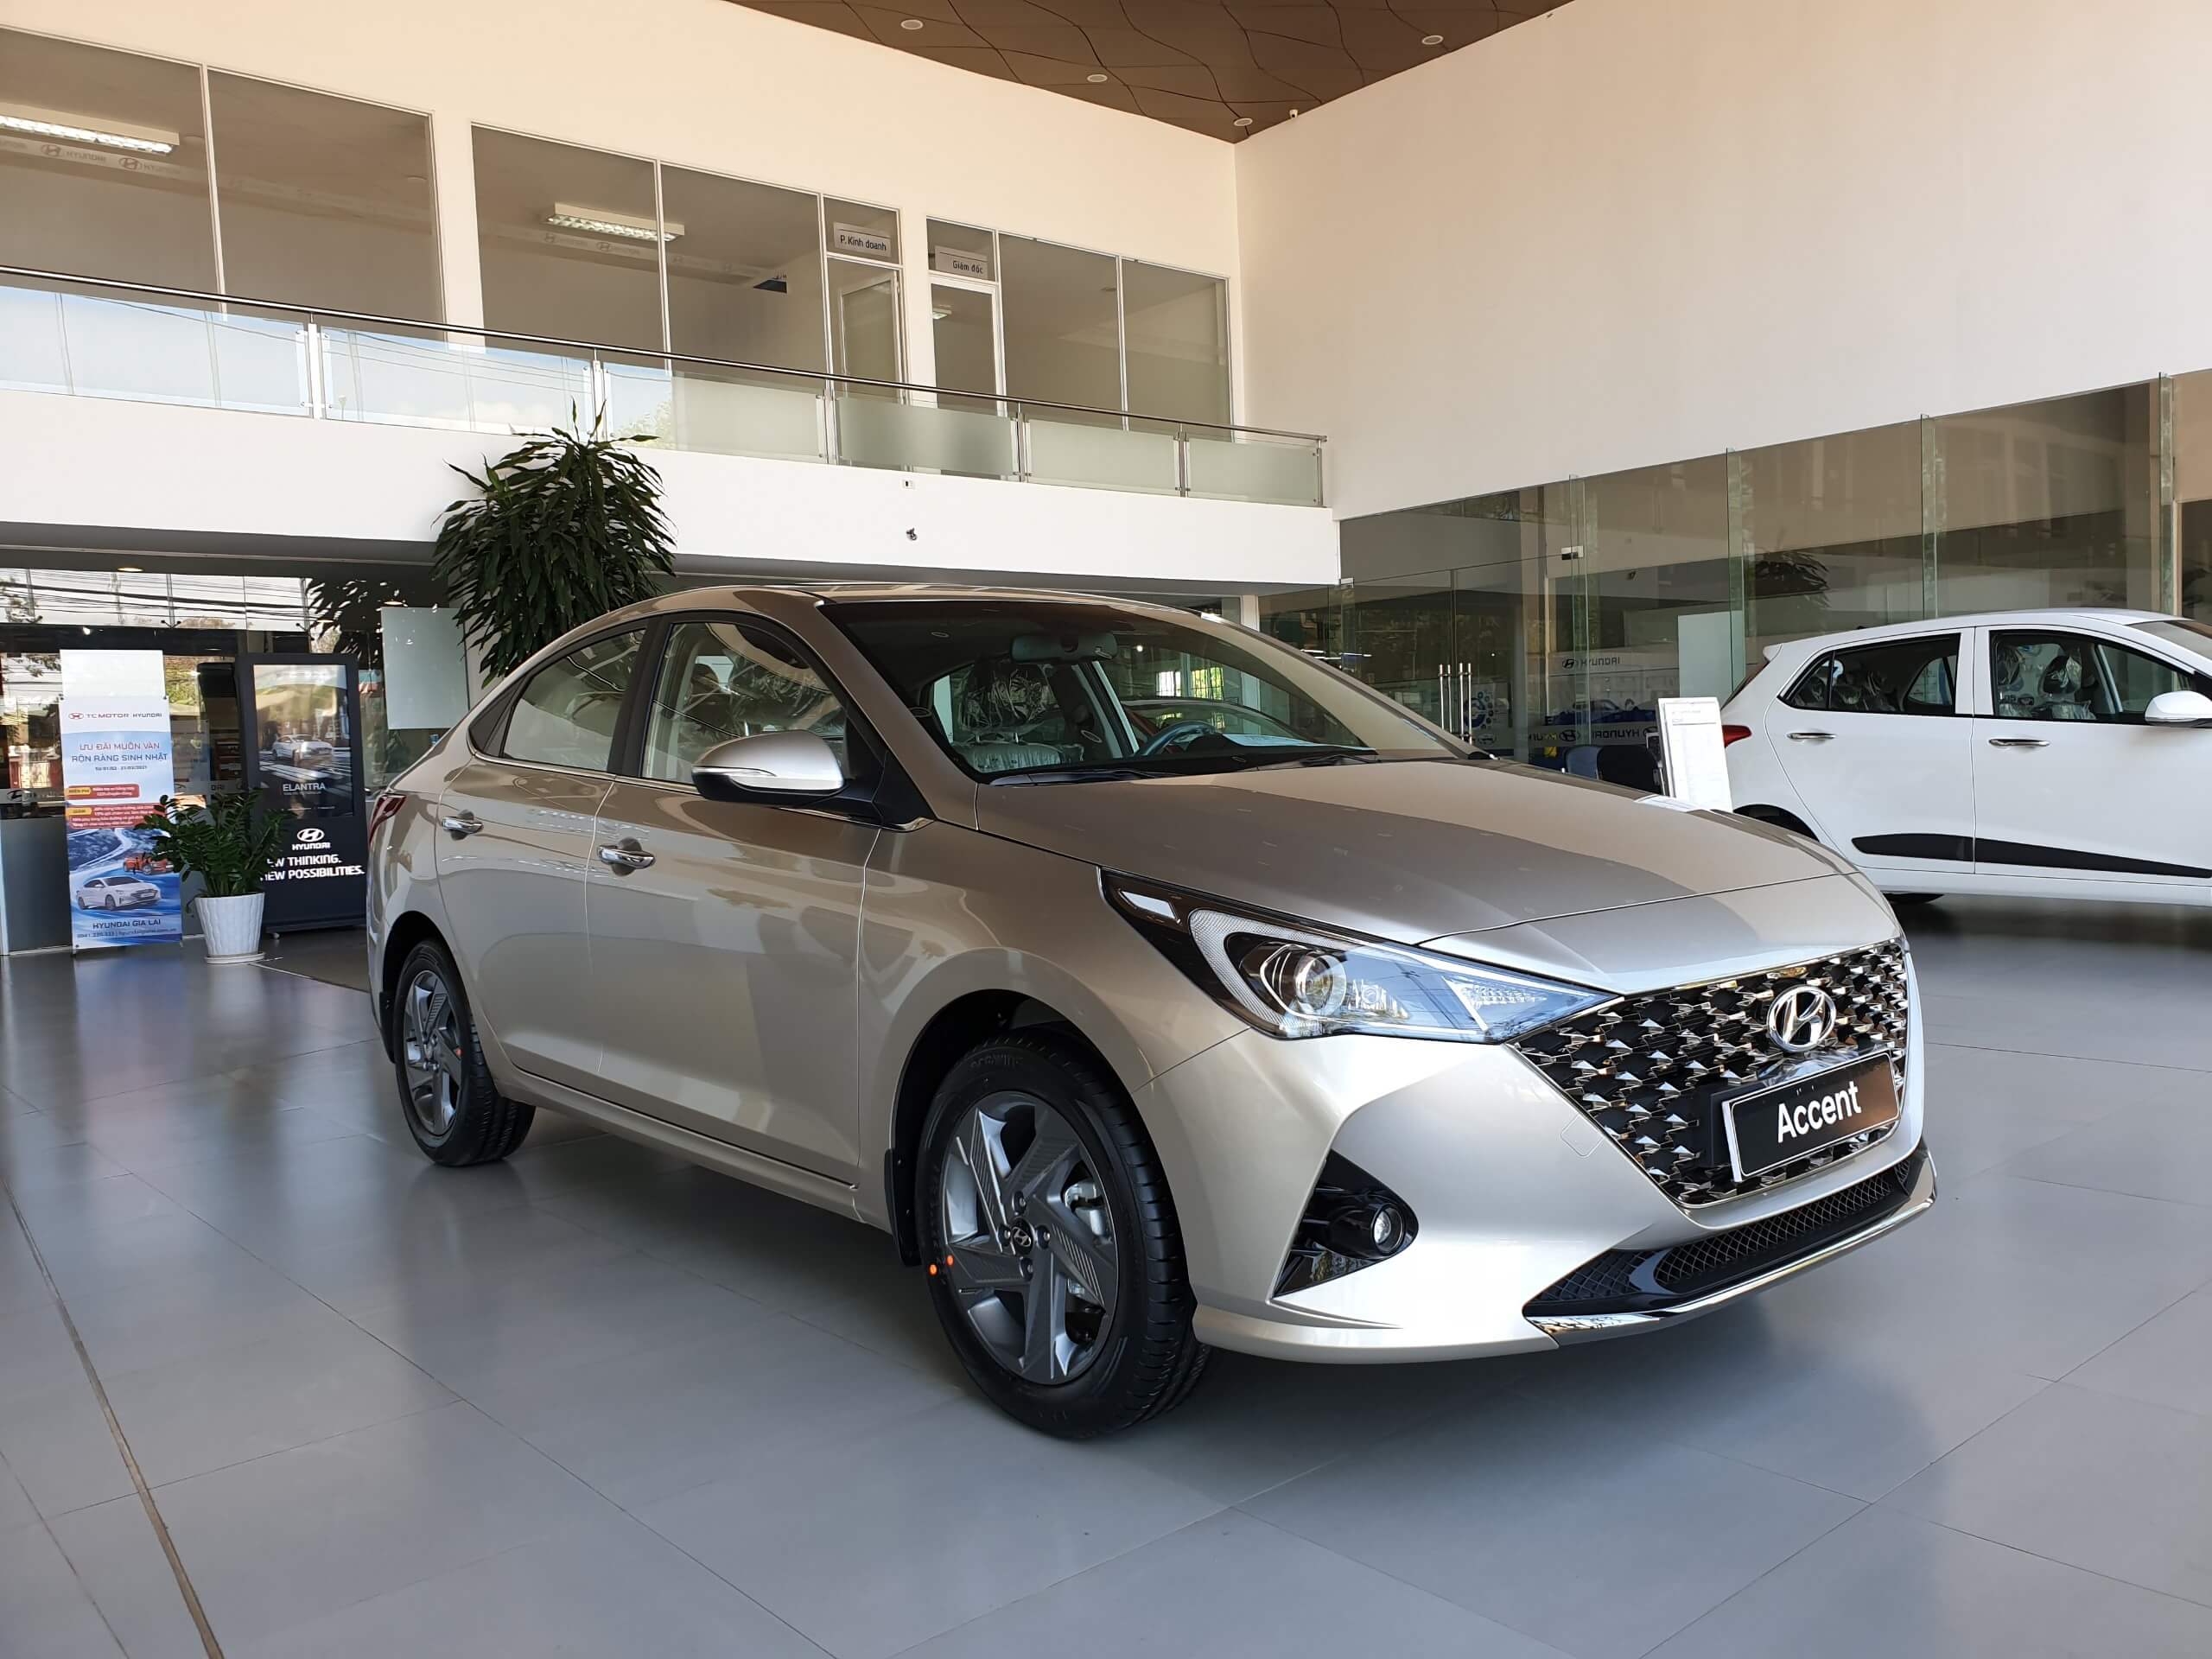 Hyundai Accent 2018 đang Bán tại Nam Định với nhiều Ưu Đãi Hấp Dẫn